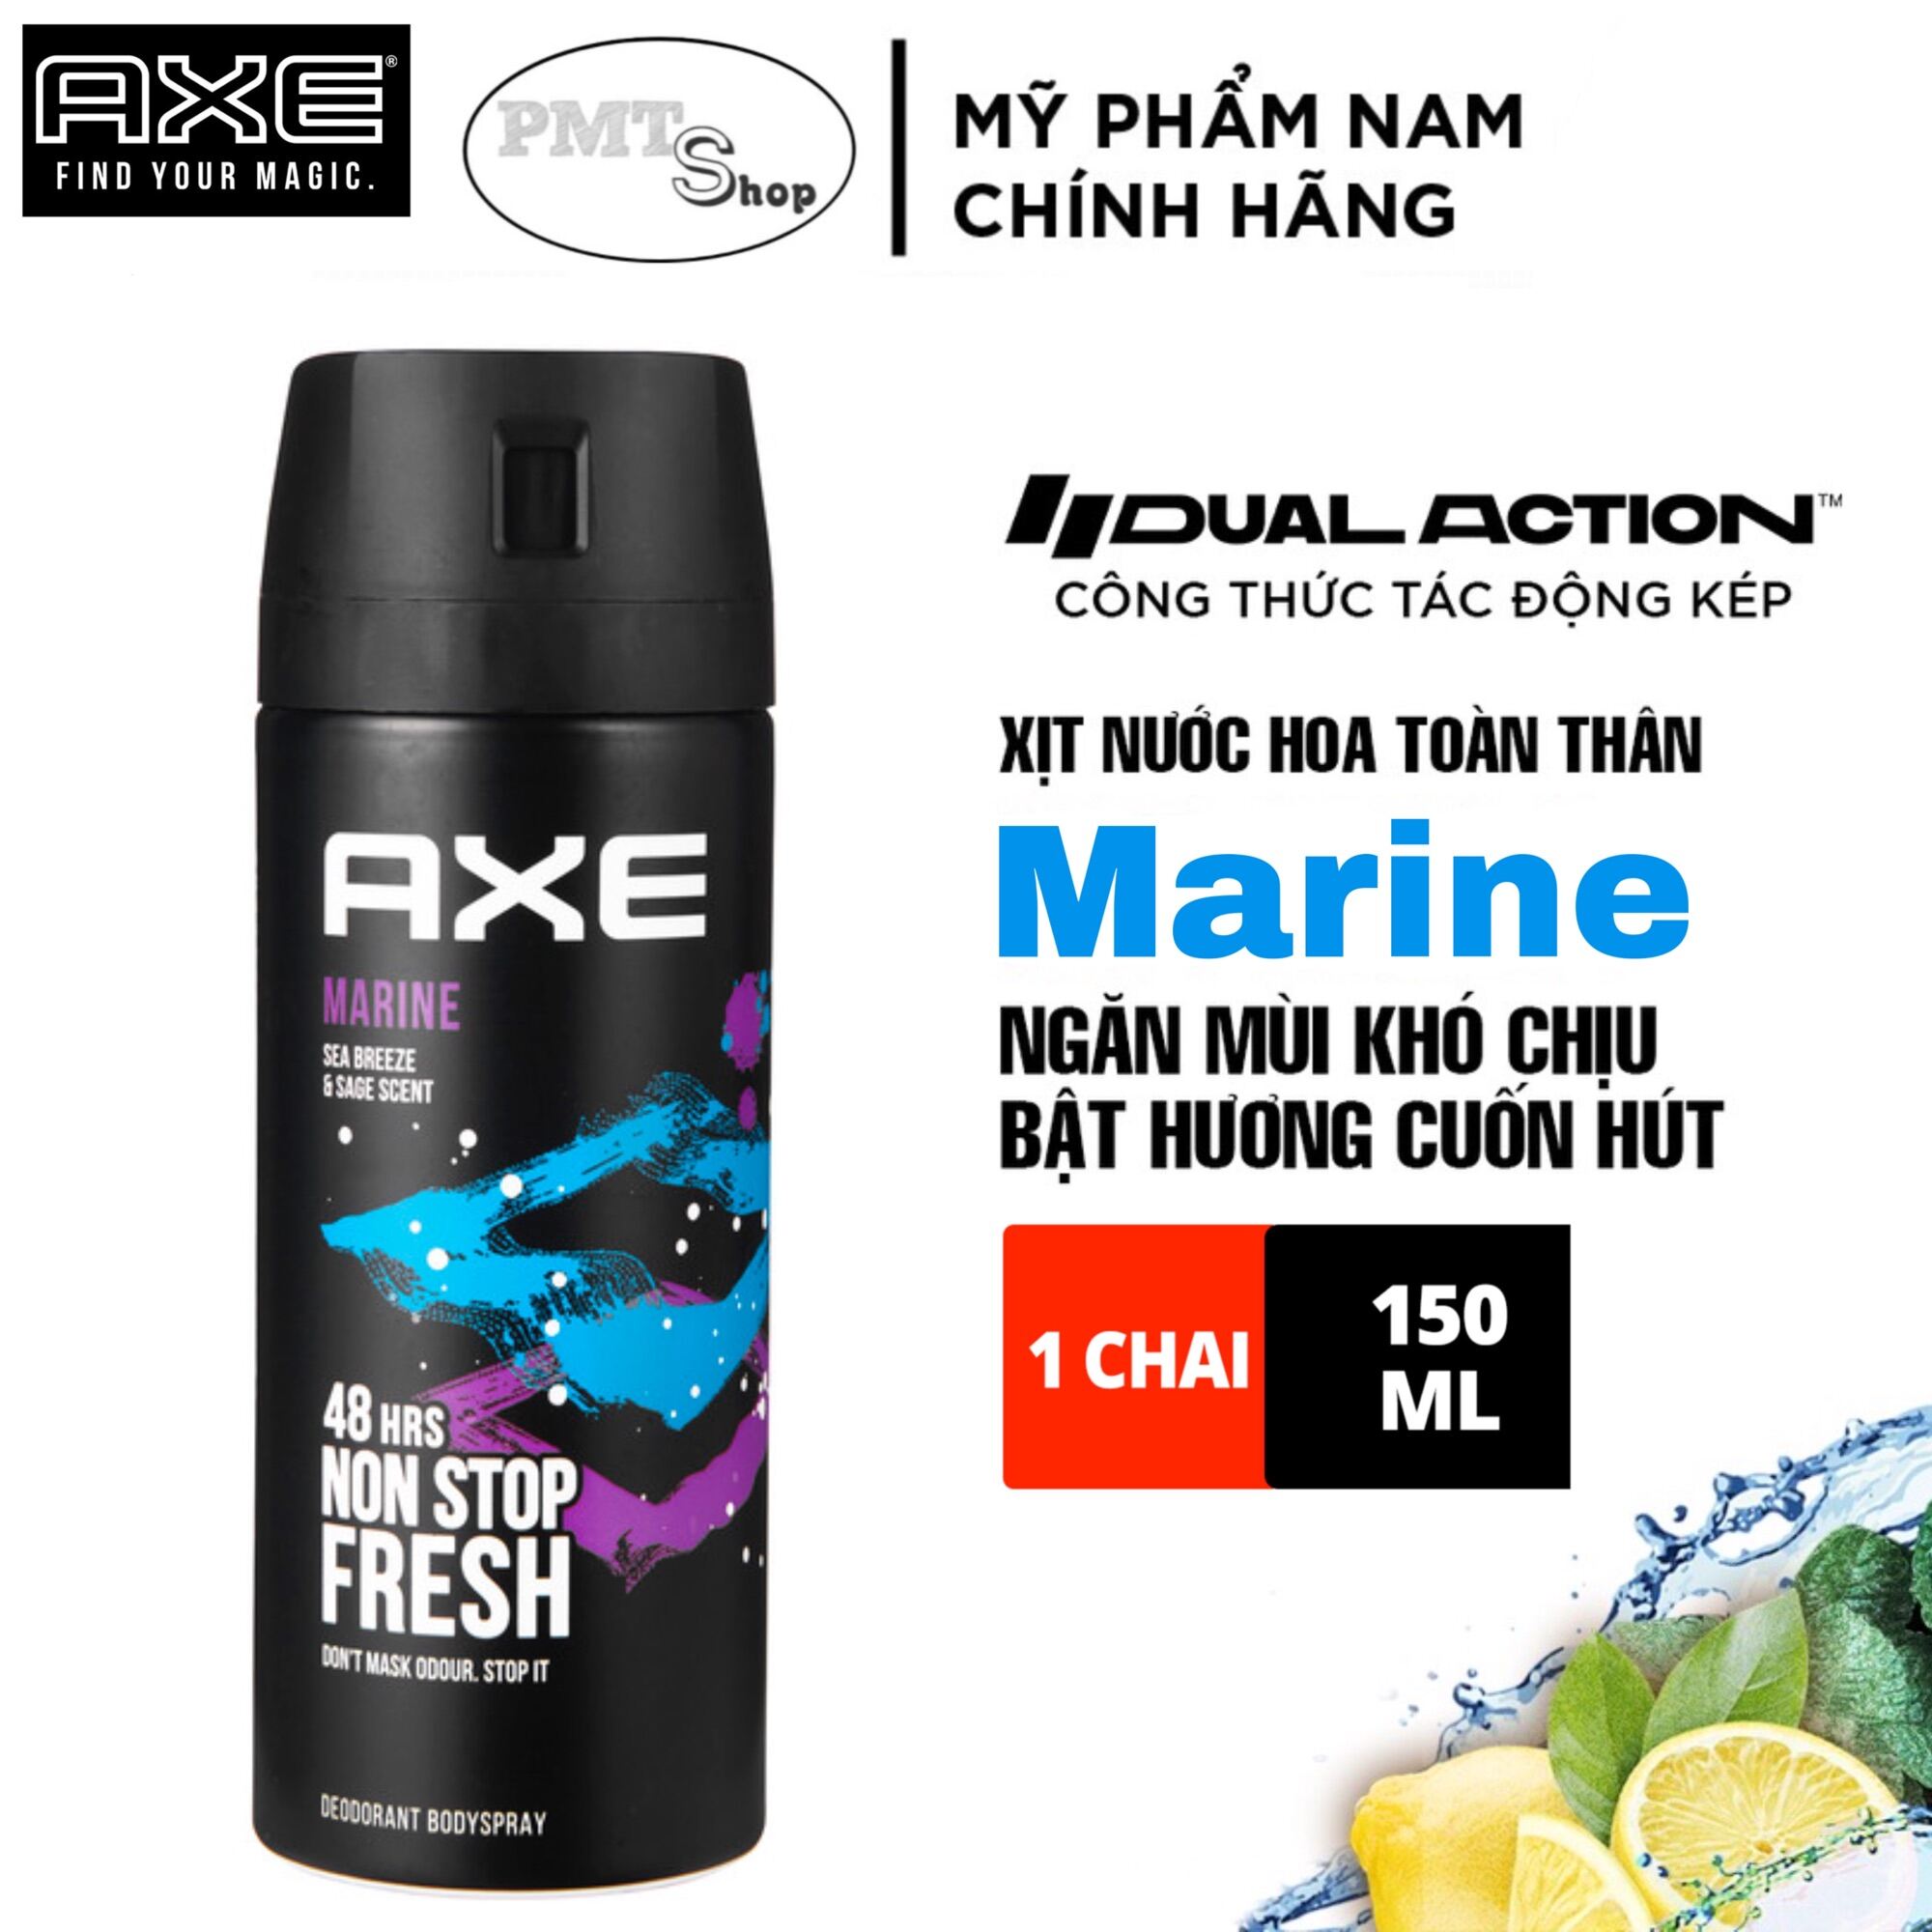 Xịt nước hoa toàn thân nam AXE Marine 150ml cao cấp